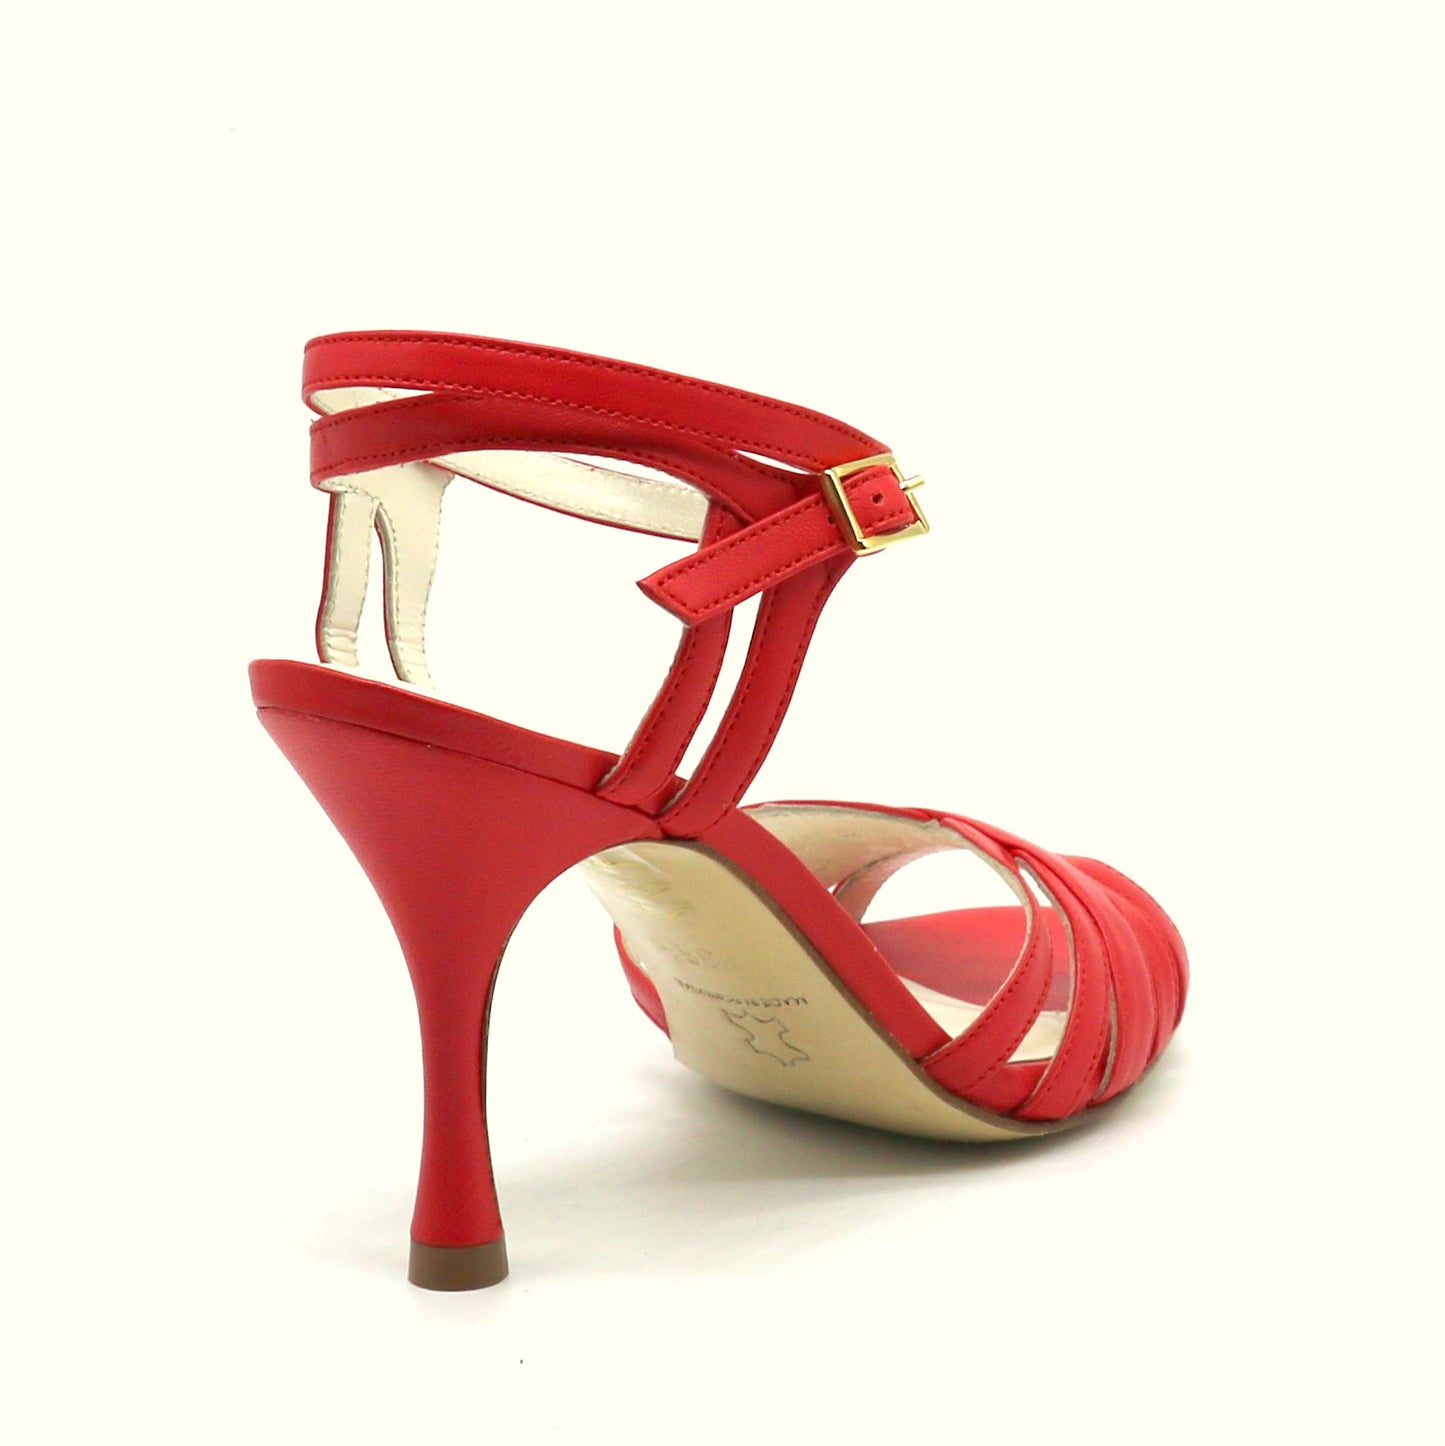 Libre coral red heels 8cm